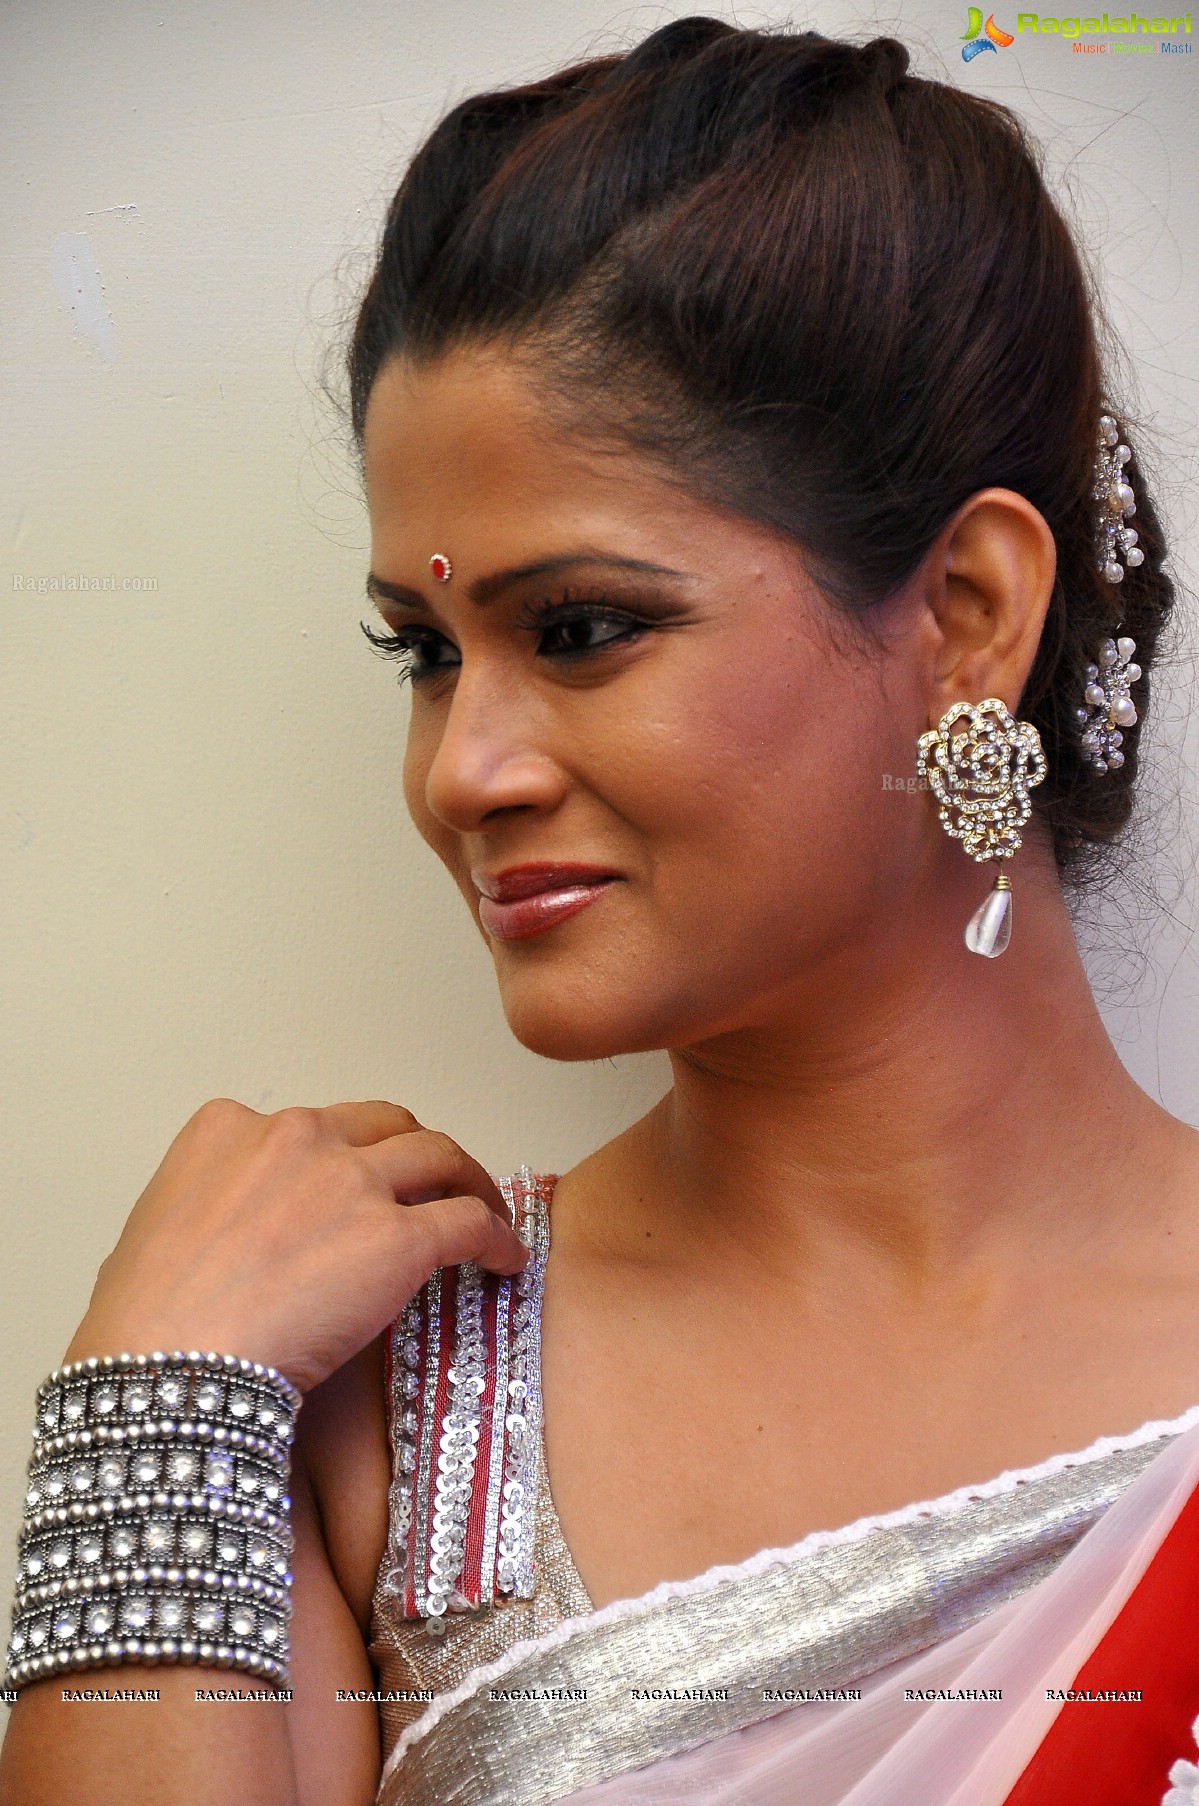 Shilpa Chakravarthi